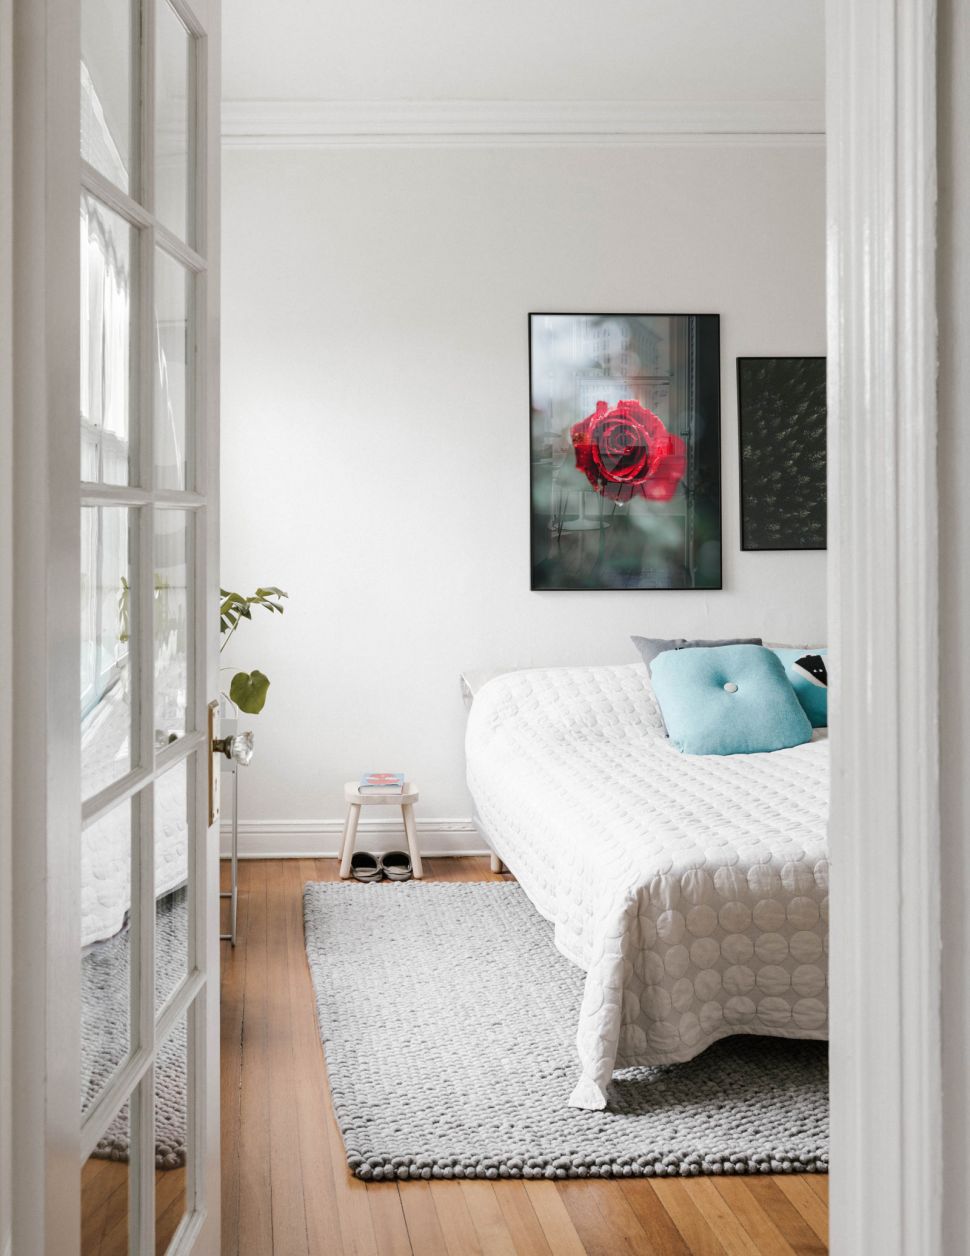 Poster Lush Rose powieszony w czarnej ramie nad łóżkiem